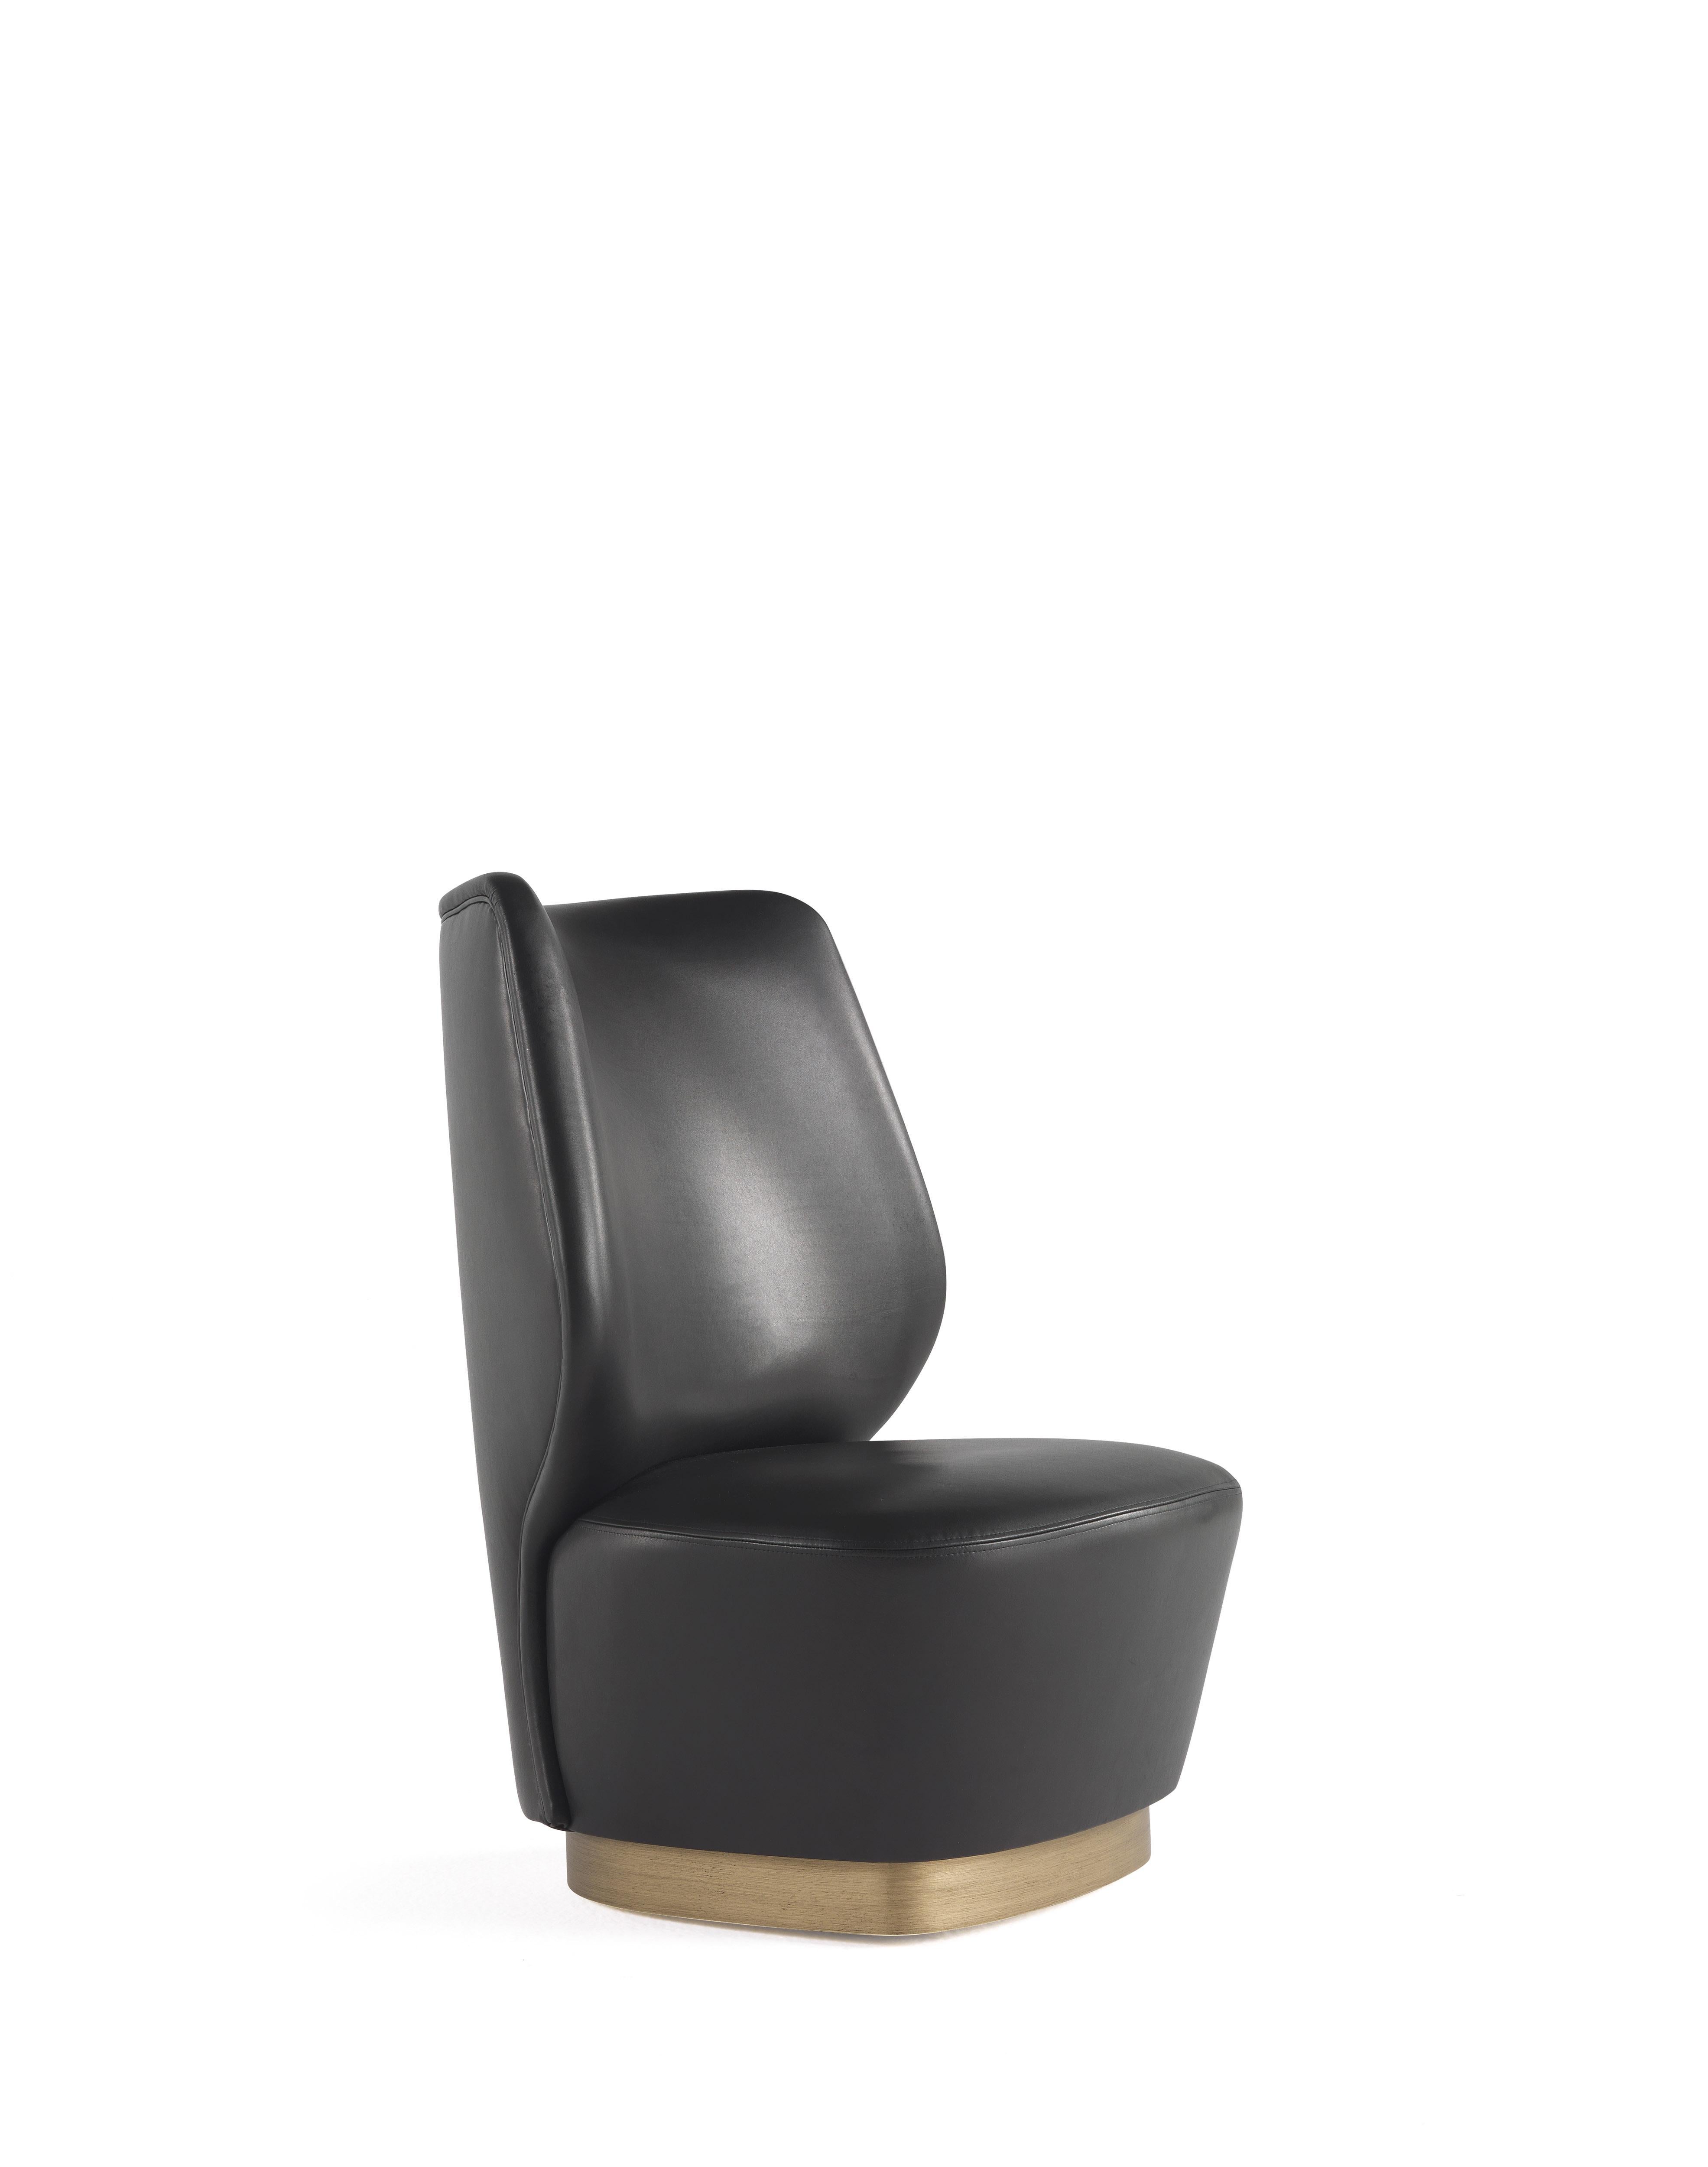 Retro-Geschmack und weiche, abgerundete Formen für den Sessel Marvila. Die raffinierte Eleganz und die kompakten Proportionen werden durch den bronzierten Sockel unterstrichen, ein Detail, das dem Ganzen einen raffinierten dekorativen Reiz